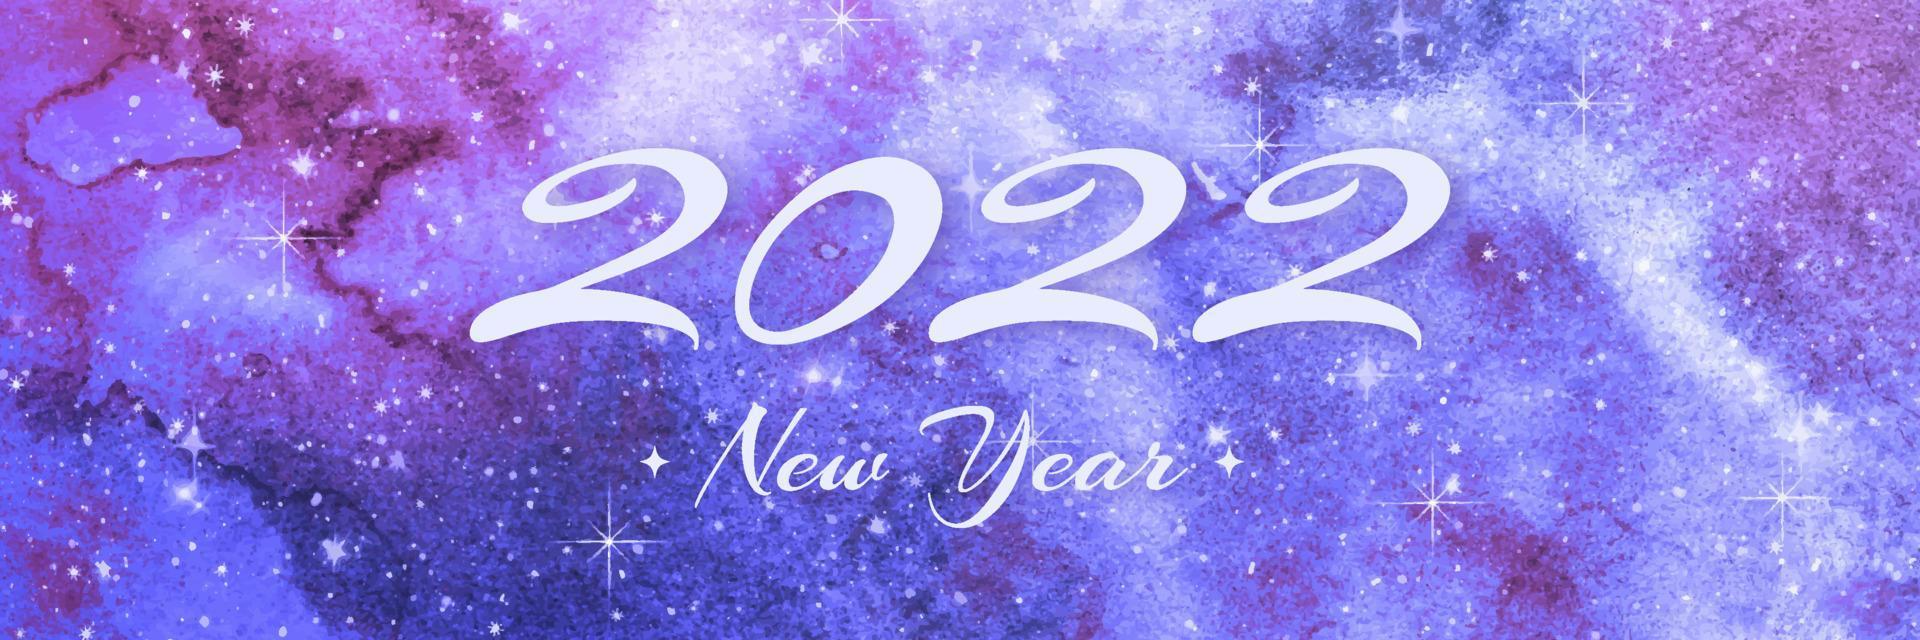 2022 nieuwjaar wenskaart ontwerp. kalligrafie nummer 2022 belettering op aquarel galaxy achtergrond. typografie grafische vectorillustratie vector